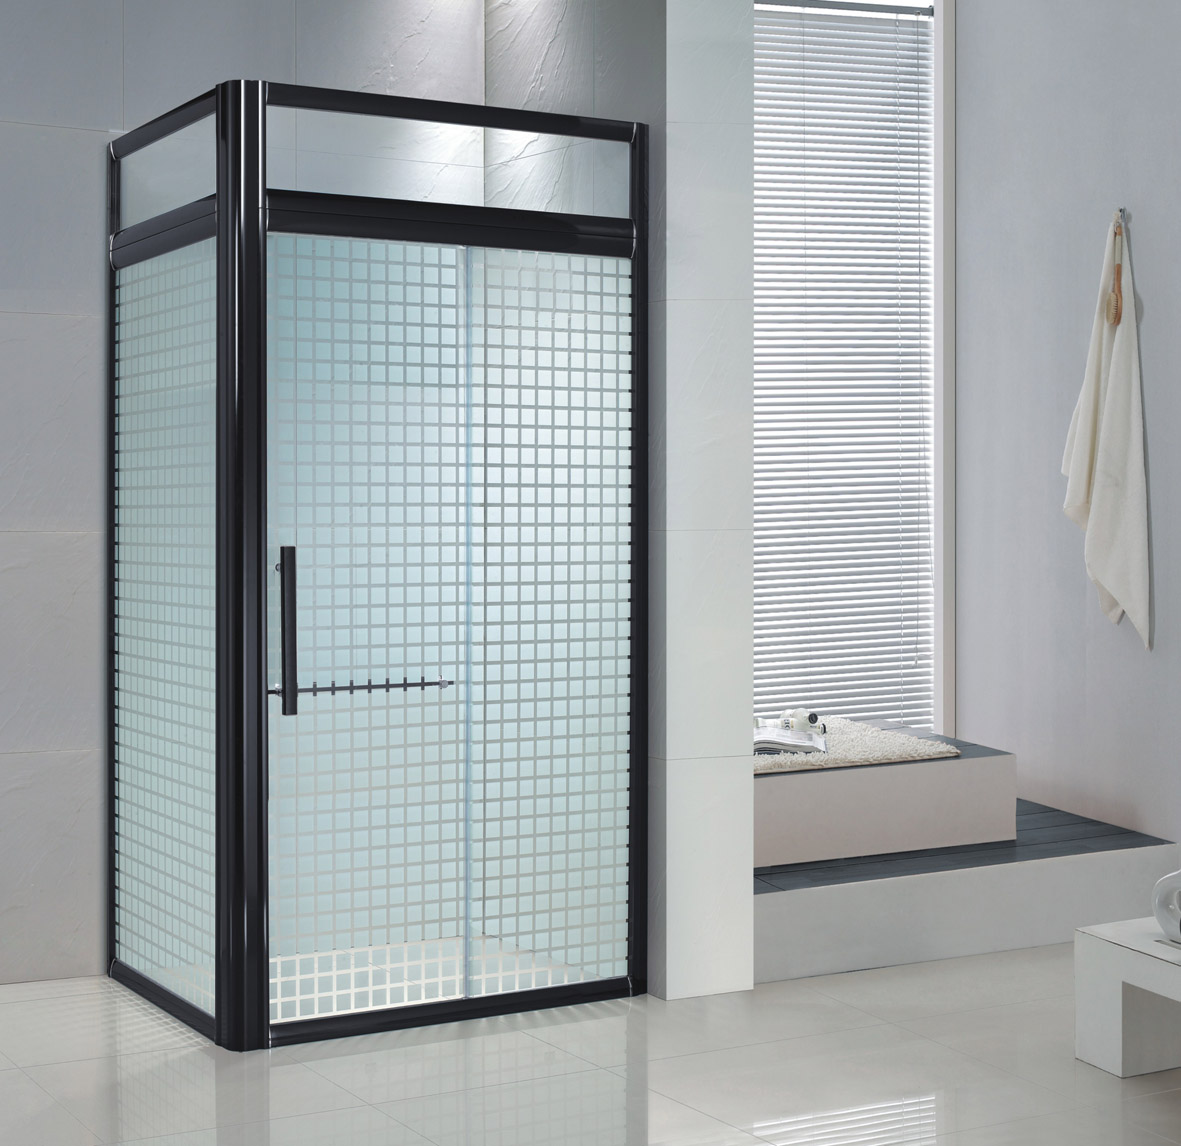 佛山卫浴厂家出口高档铝合金型材方型光黑加副窗淋浴房吊趟门LR026